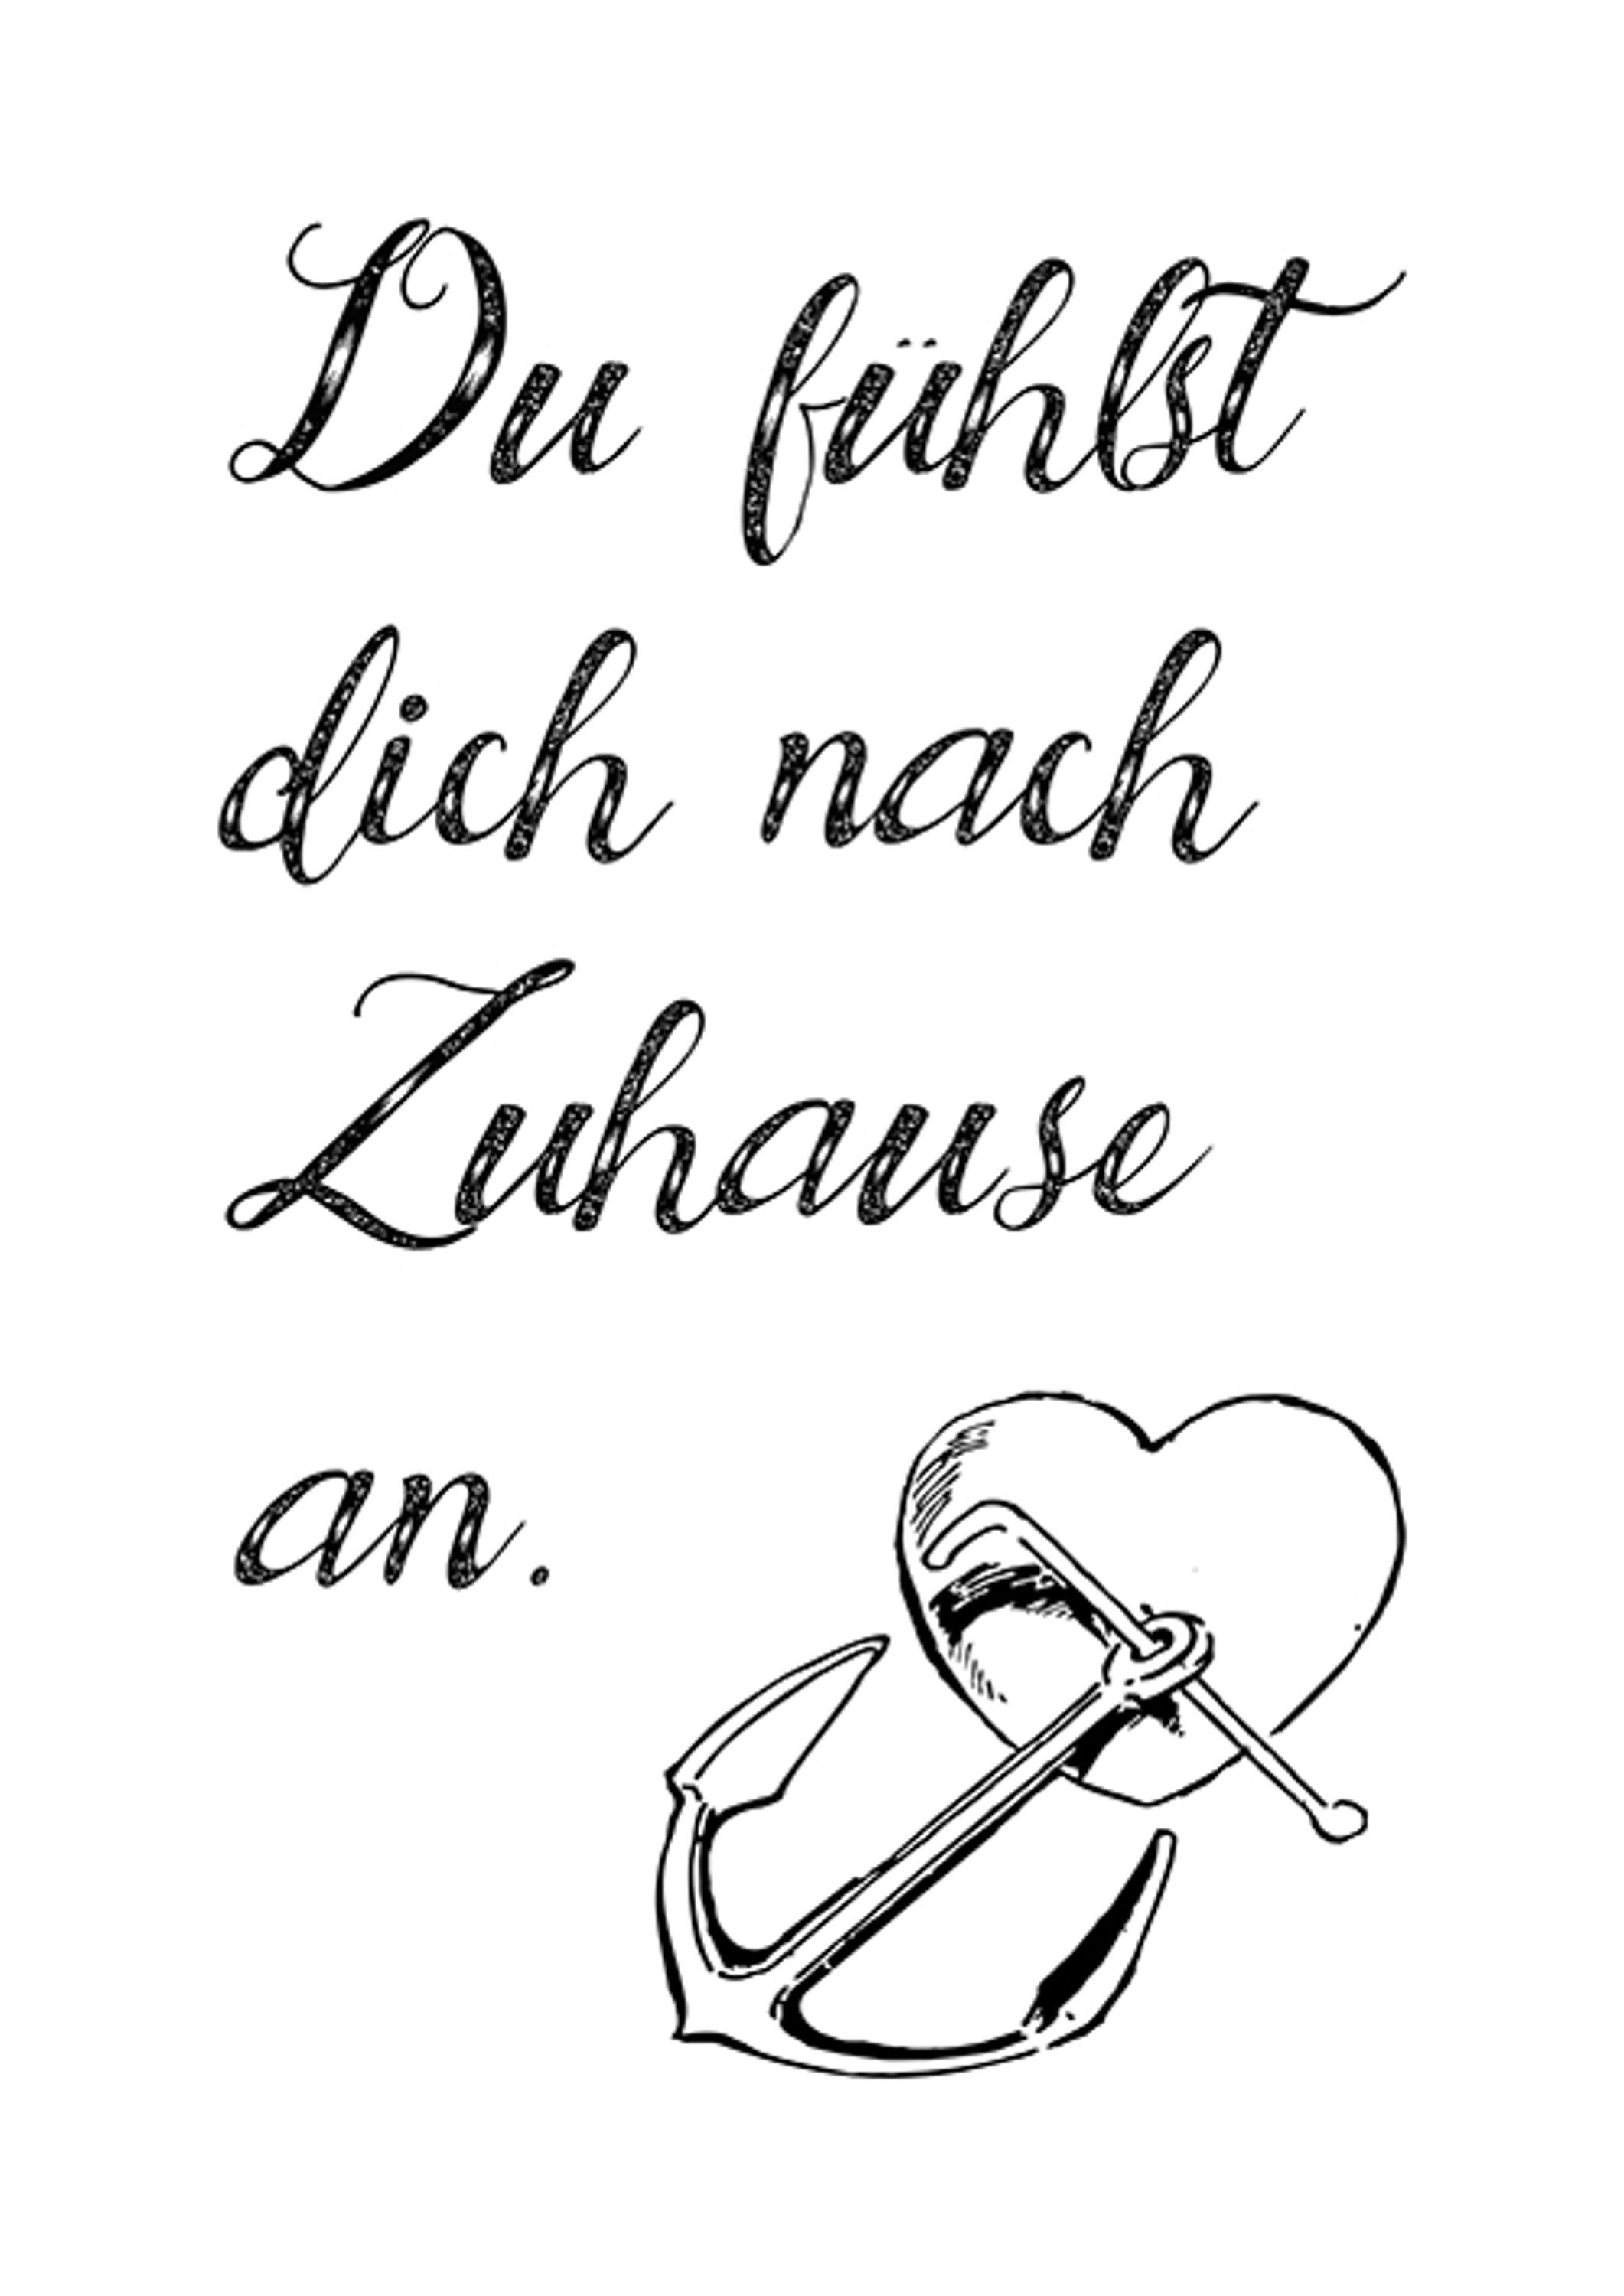 Spruch Liebe Liebeserklärung, Poster artissimo und Poster Liebe mit Bild Typo-Print Sprüche Zitate DinA4 Sprüche: